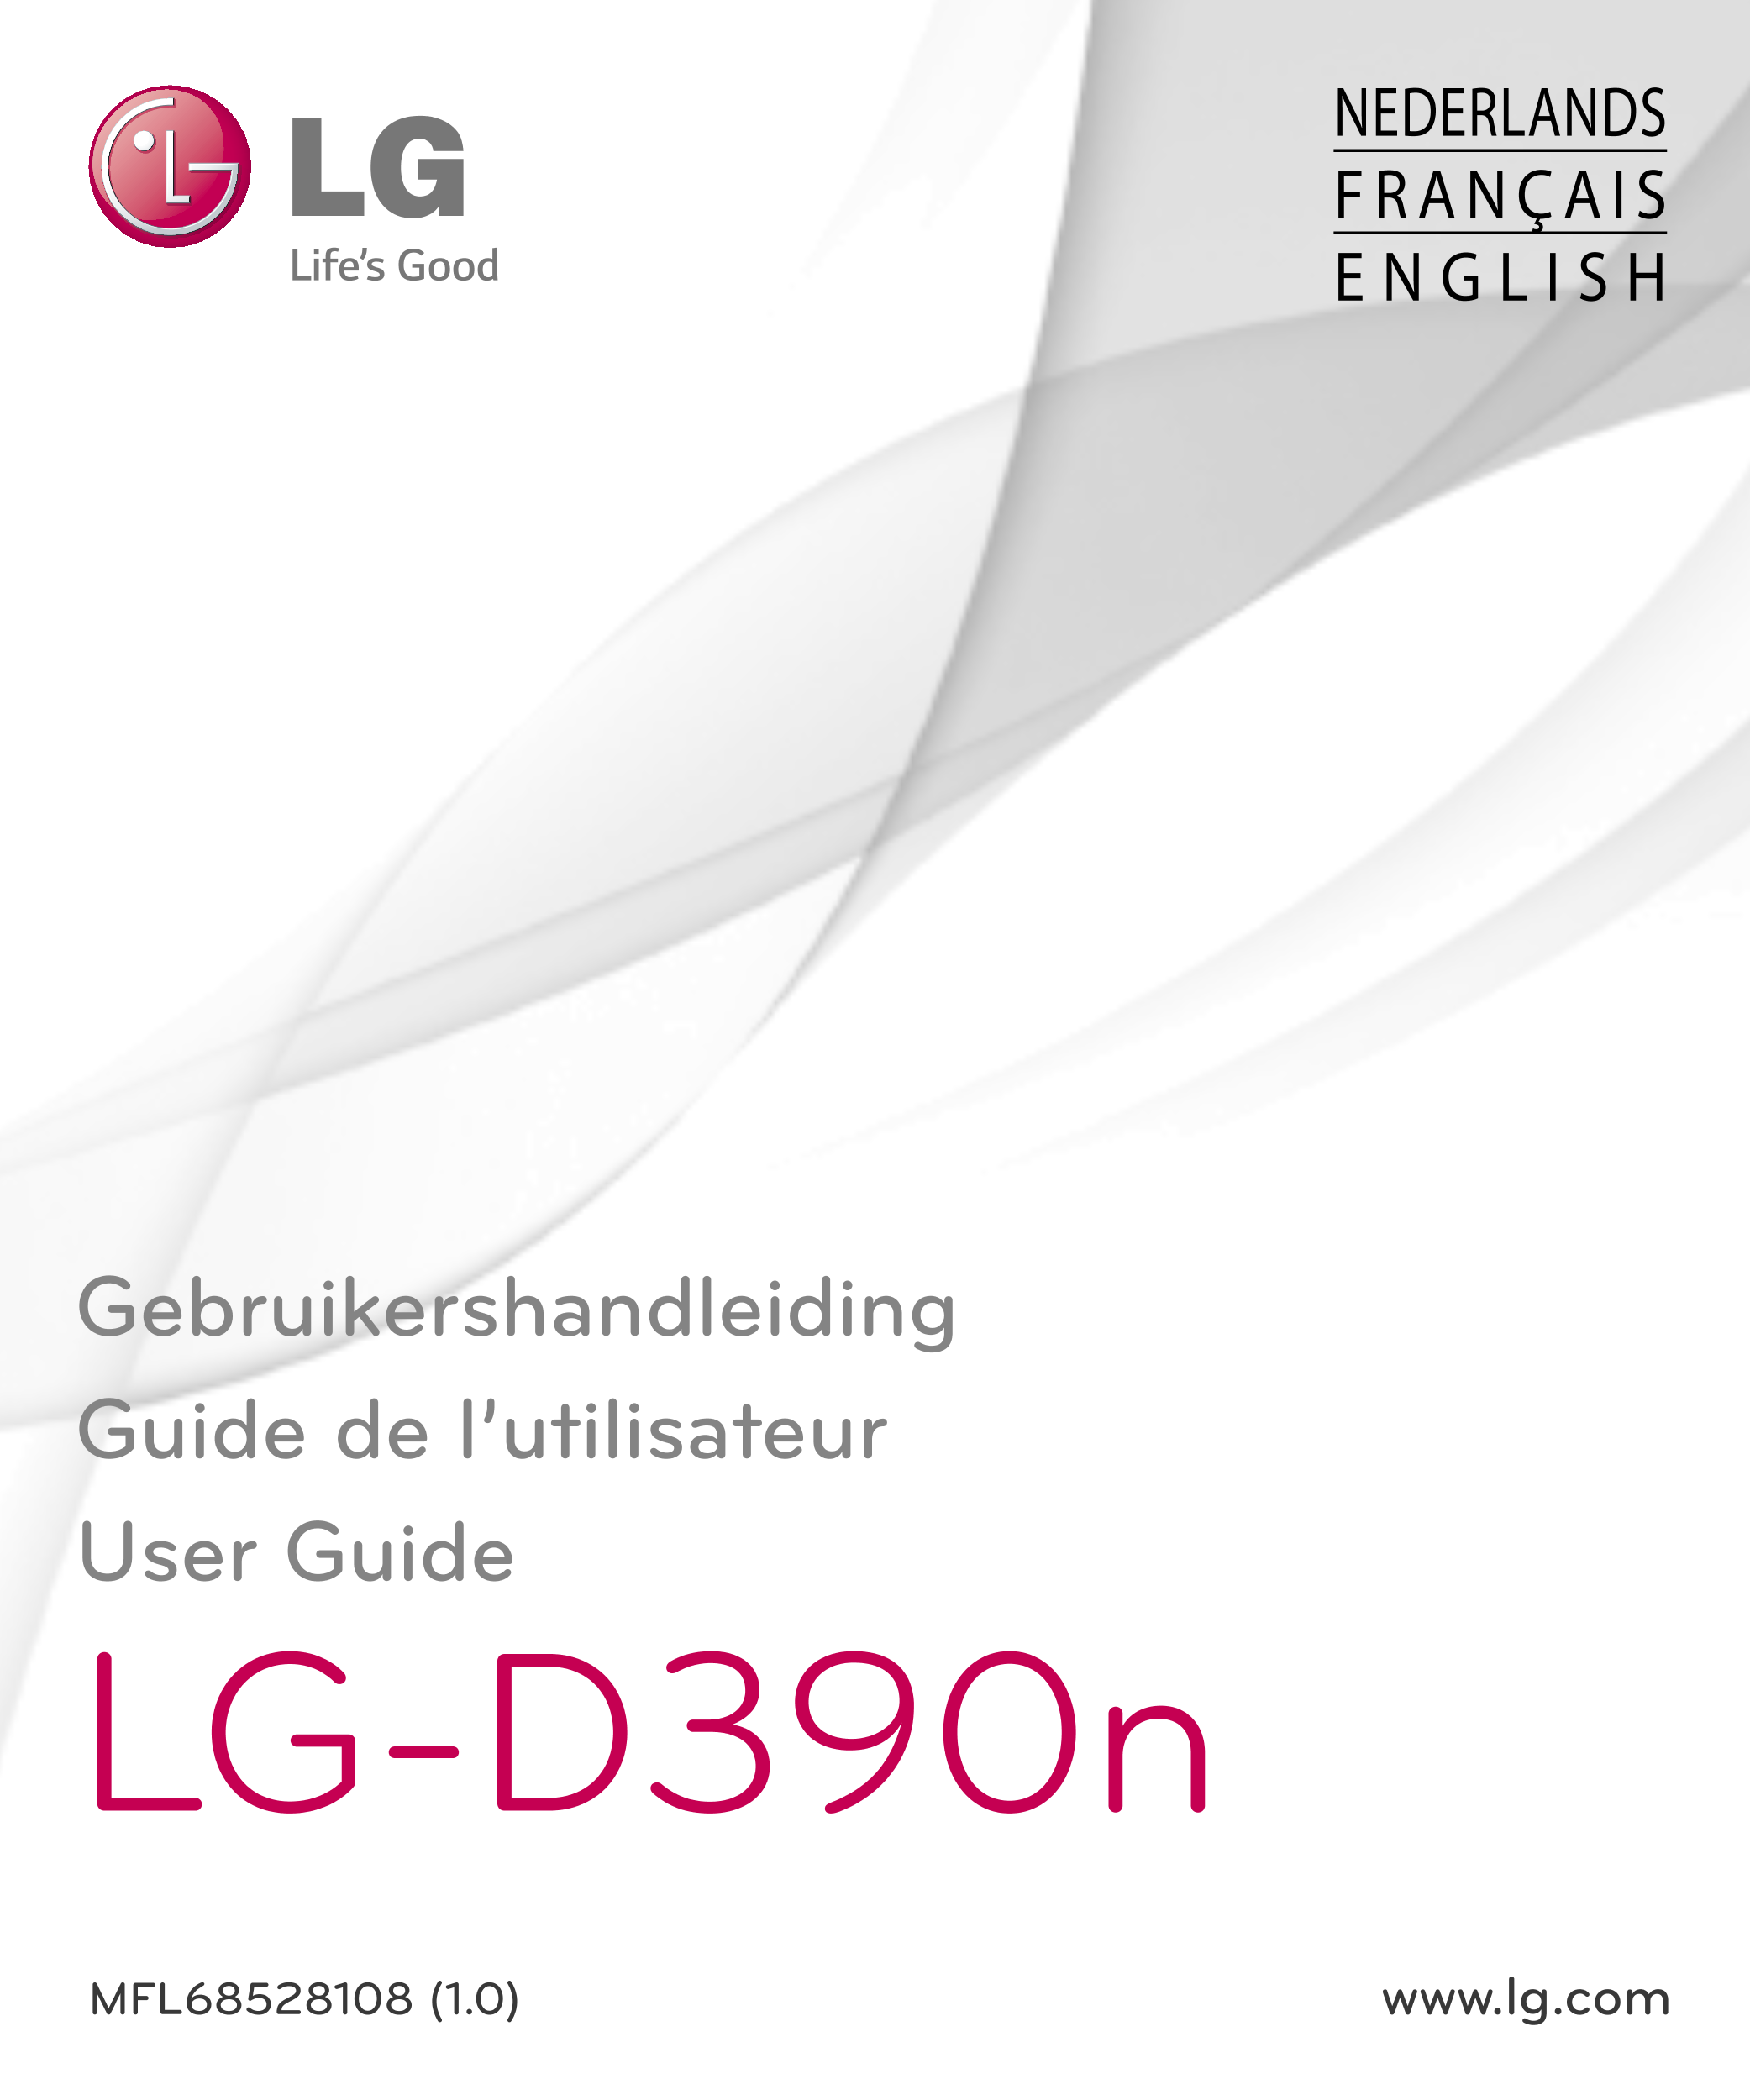 NEDERLANDS
FRANÇAIS
E N G L I S H
Gebruikershandleiding
Guide de l’utilisateur
User Guide
LG-D390n
MFL68528108 (1.0)  www.lg.com